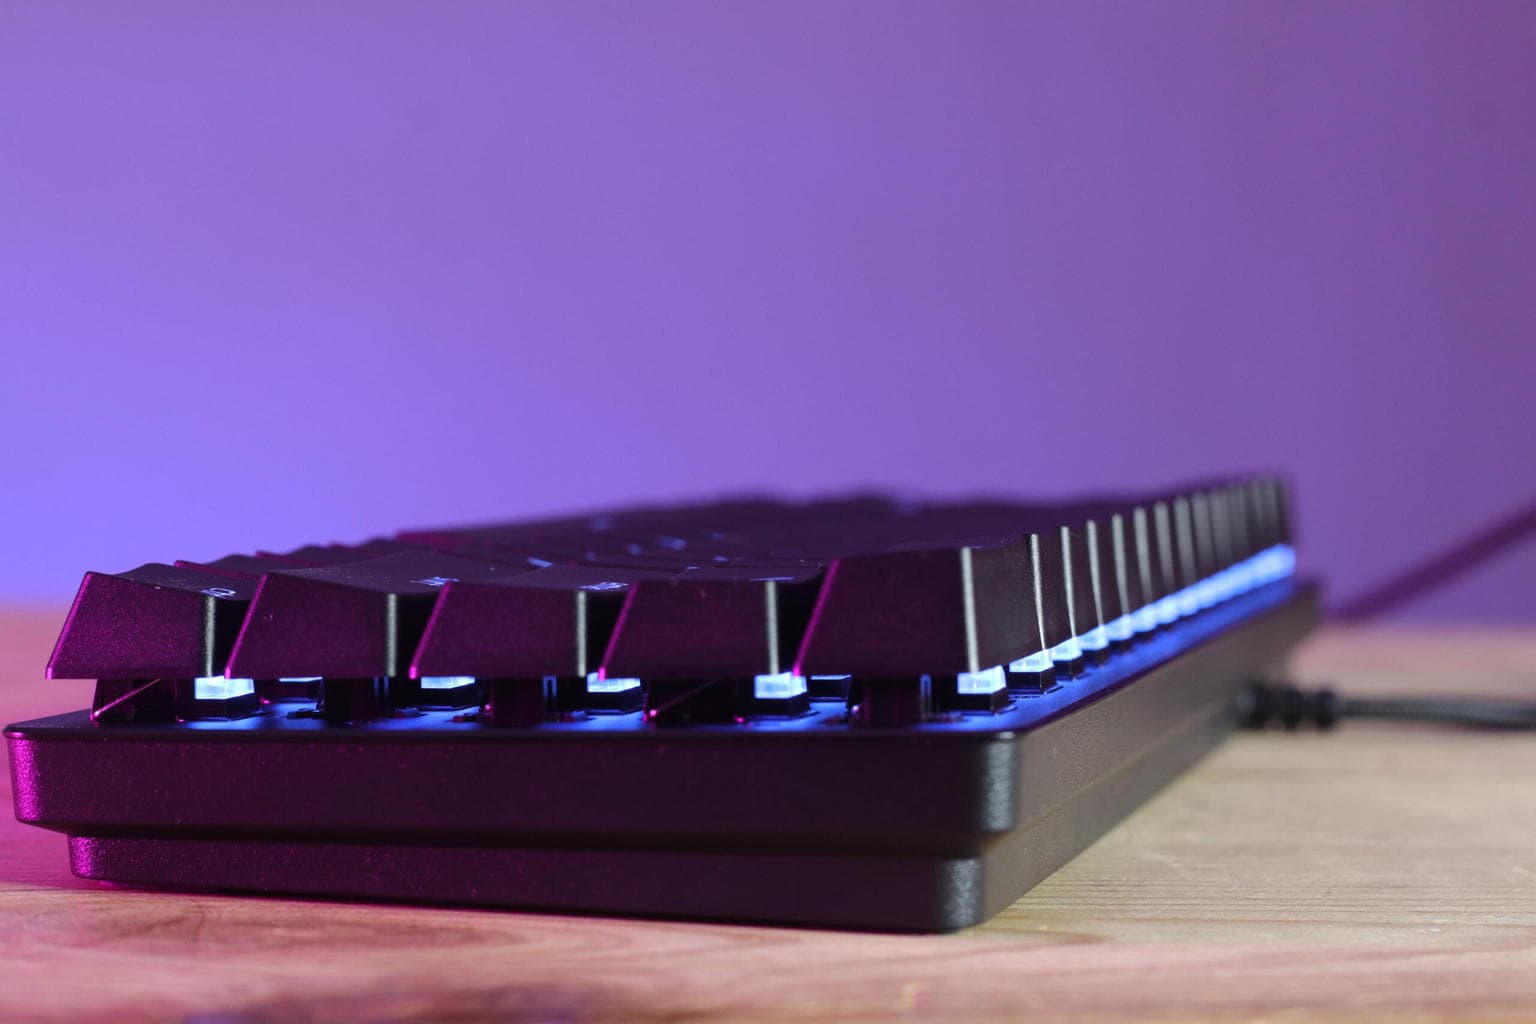 Review Razer Huntsman Mini Analog. Análisis en español del teclado óptico  más pequeño del mercado.